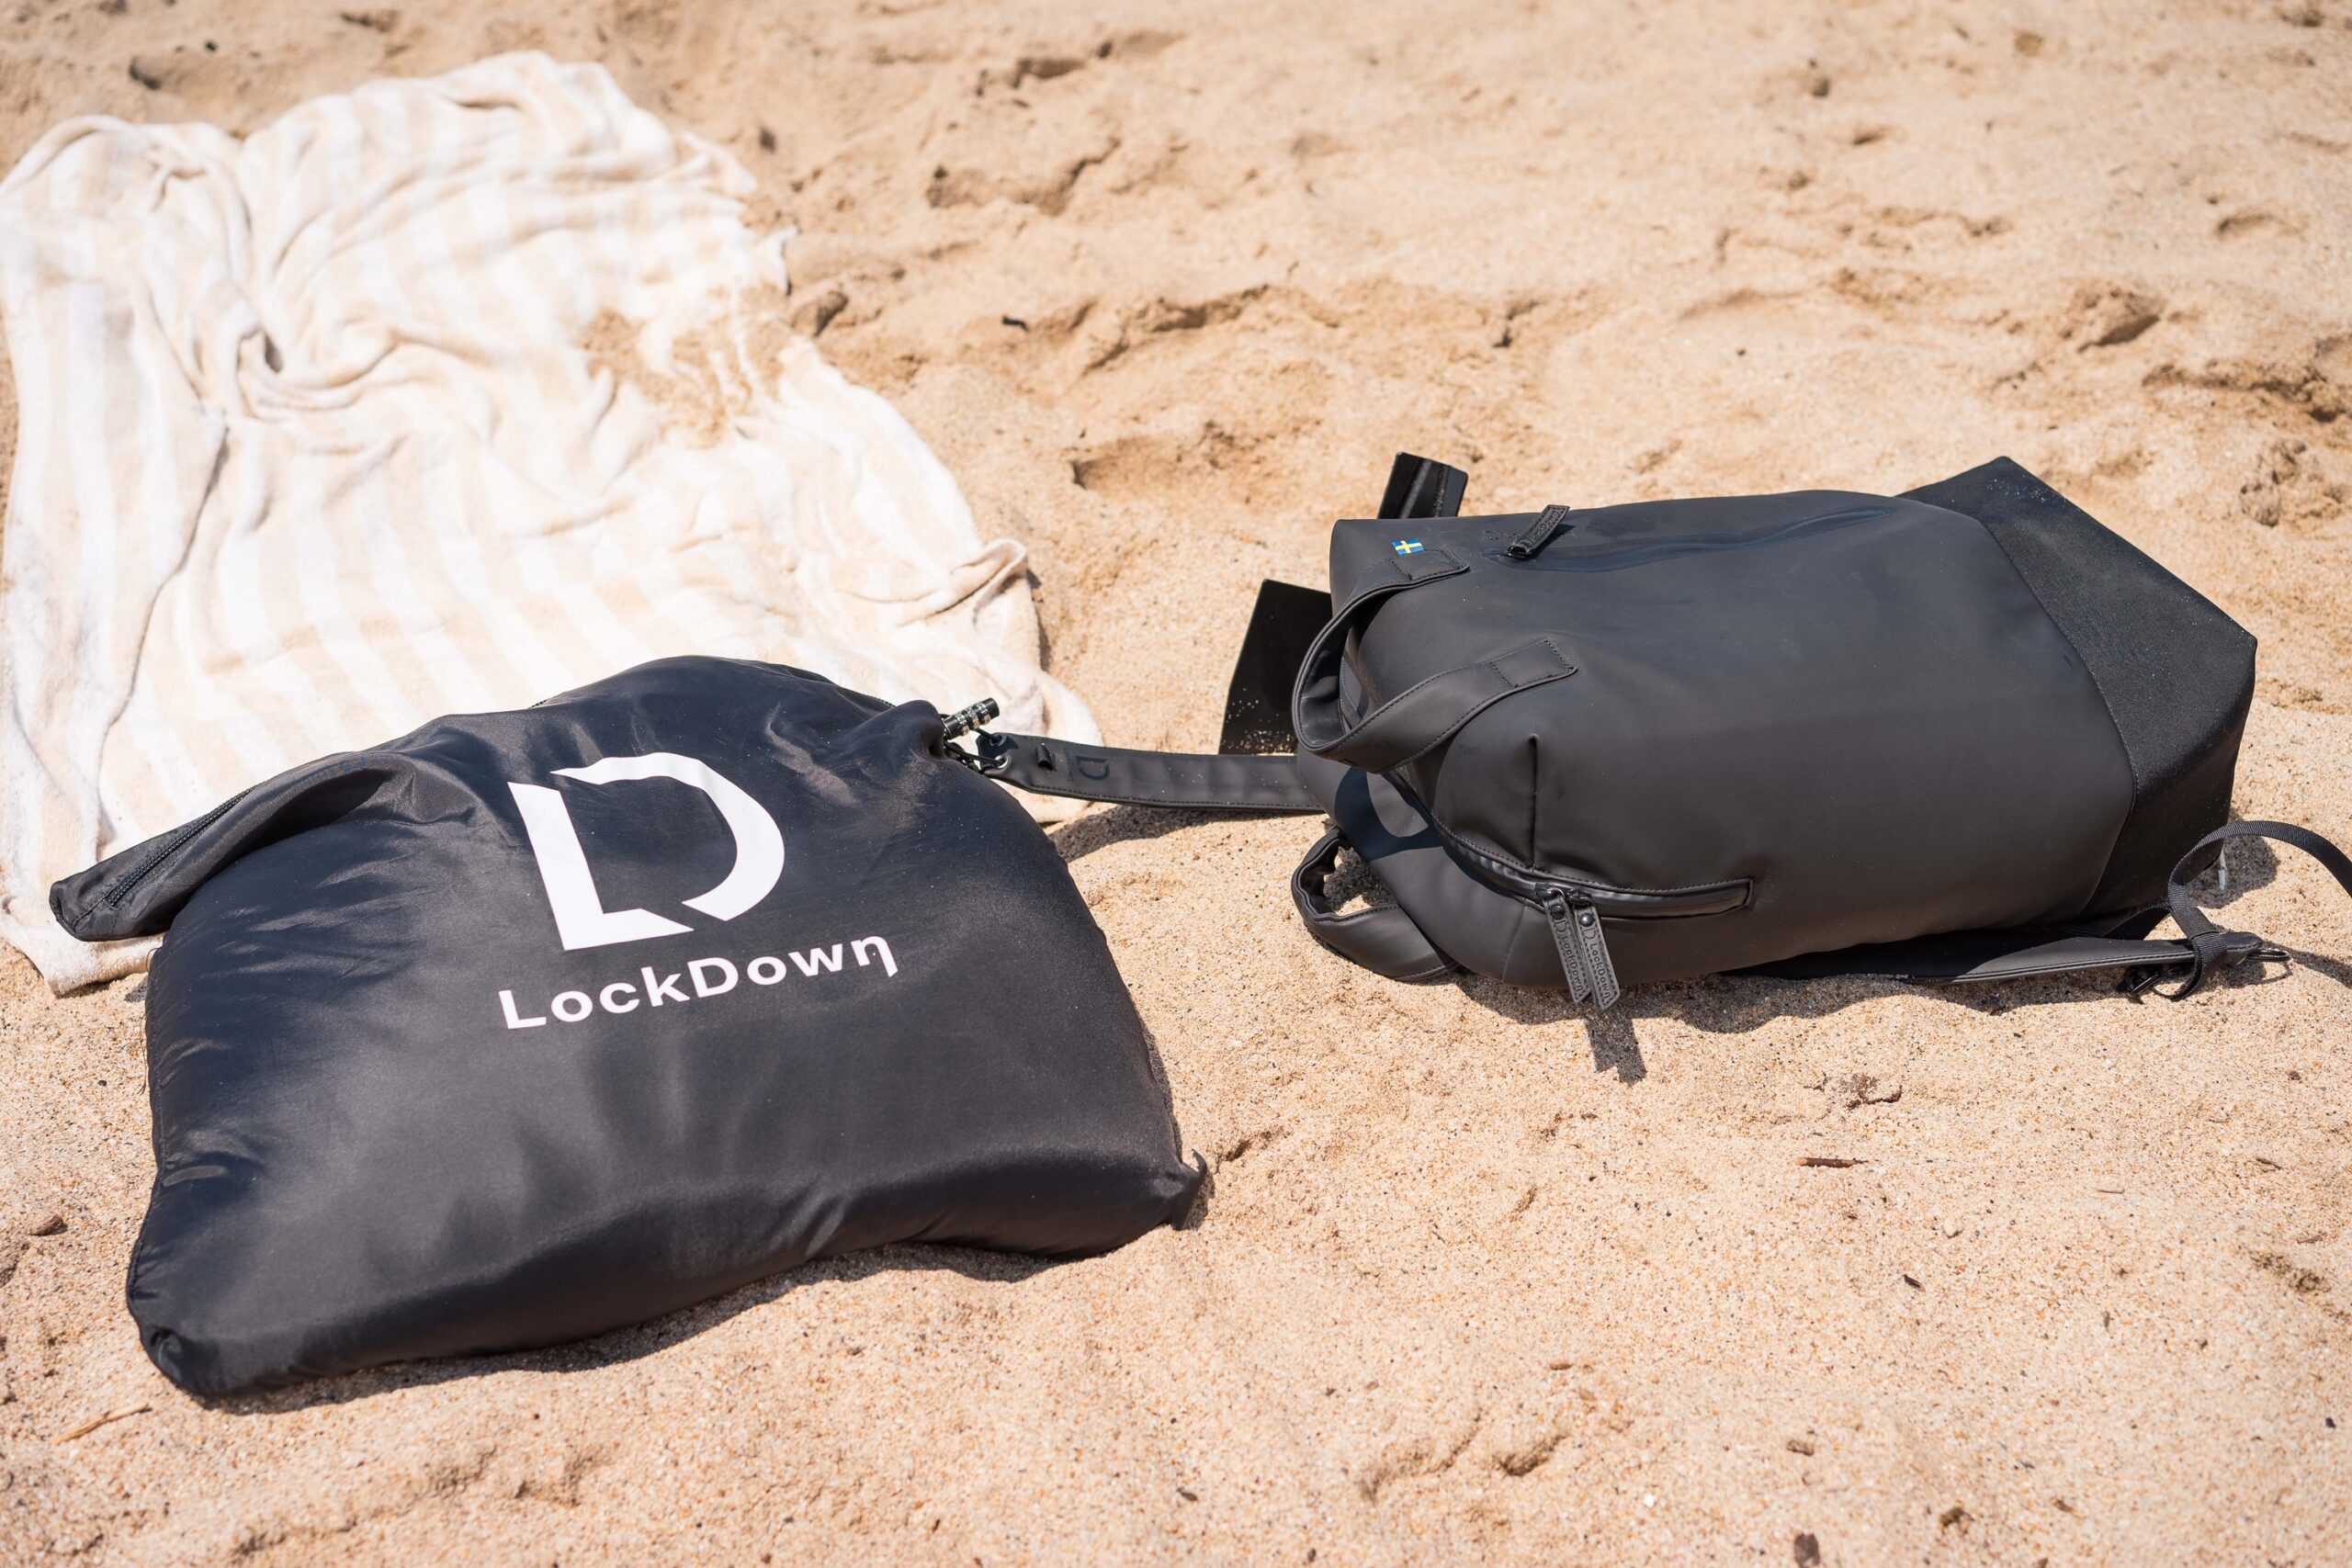 Lockdown Innovation ryggsäck med sandankare på stranden